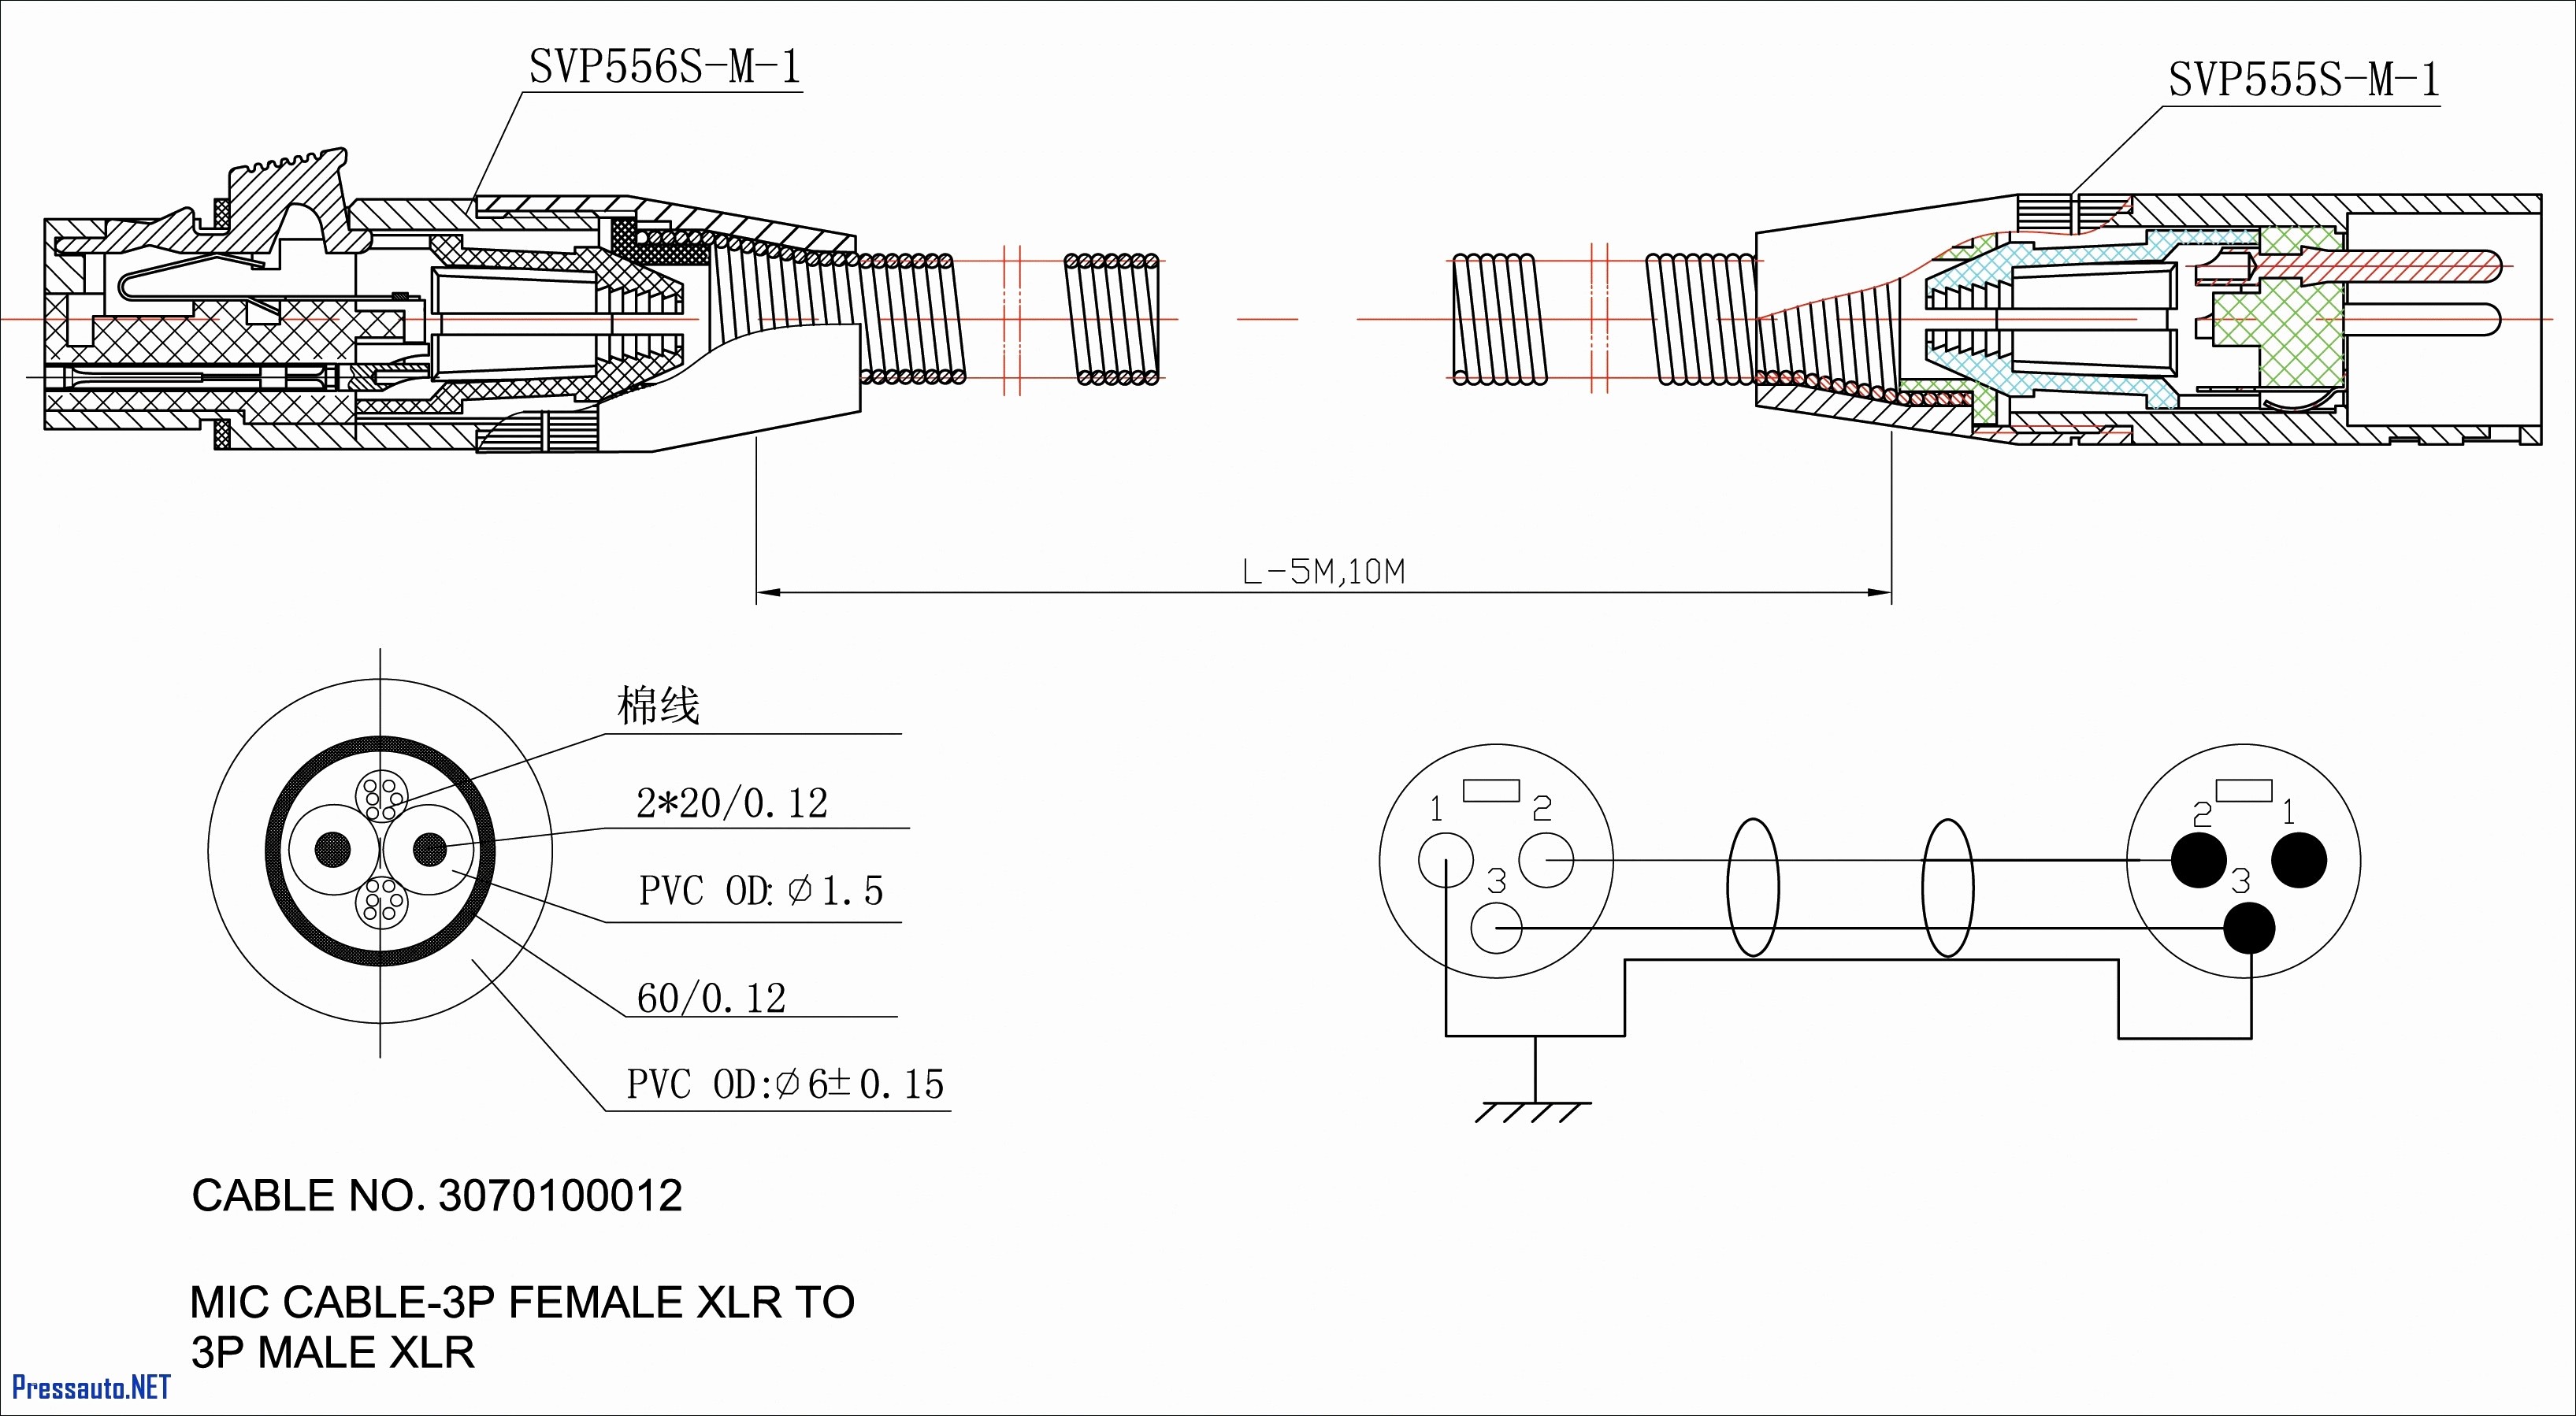 Ford F150 5 4 Engine Diagram F150 Wiring Diagram 2016 Wiring Diagram toolbox Of Ford F150 5 4 Engine Diagram